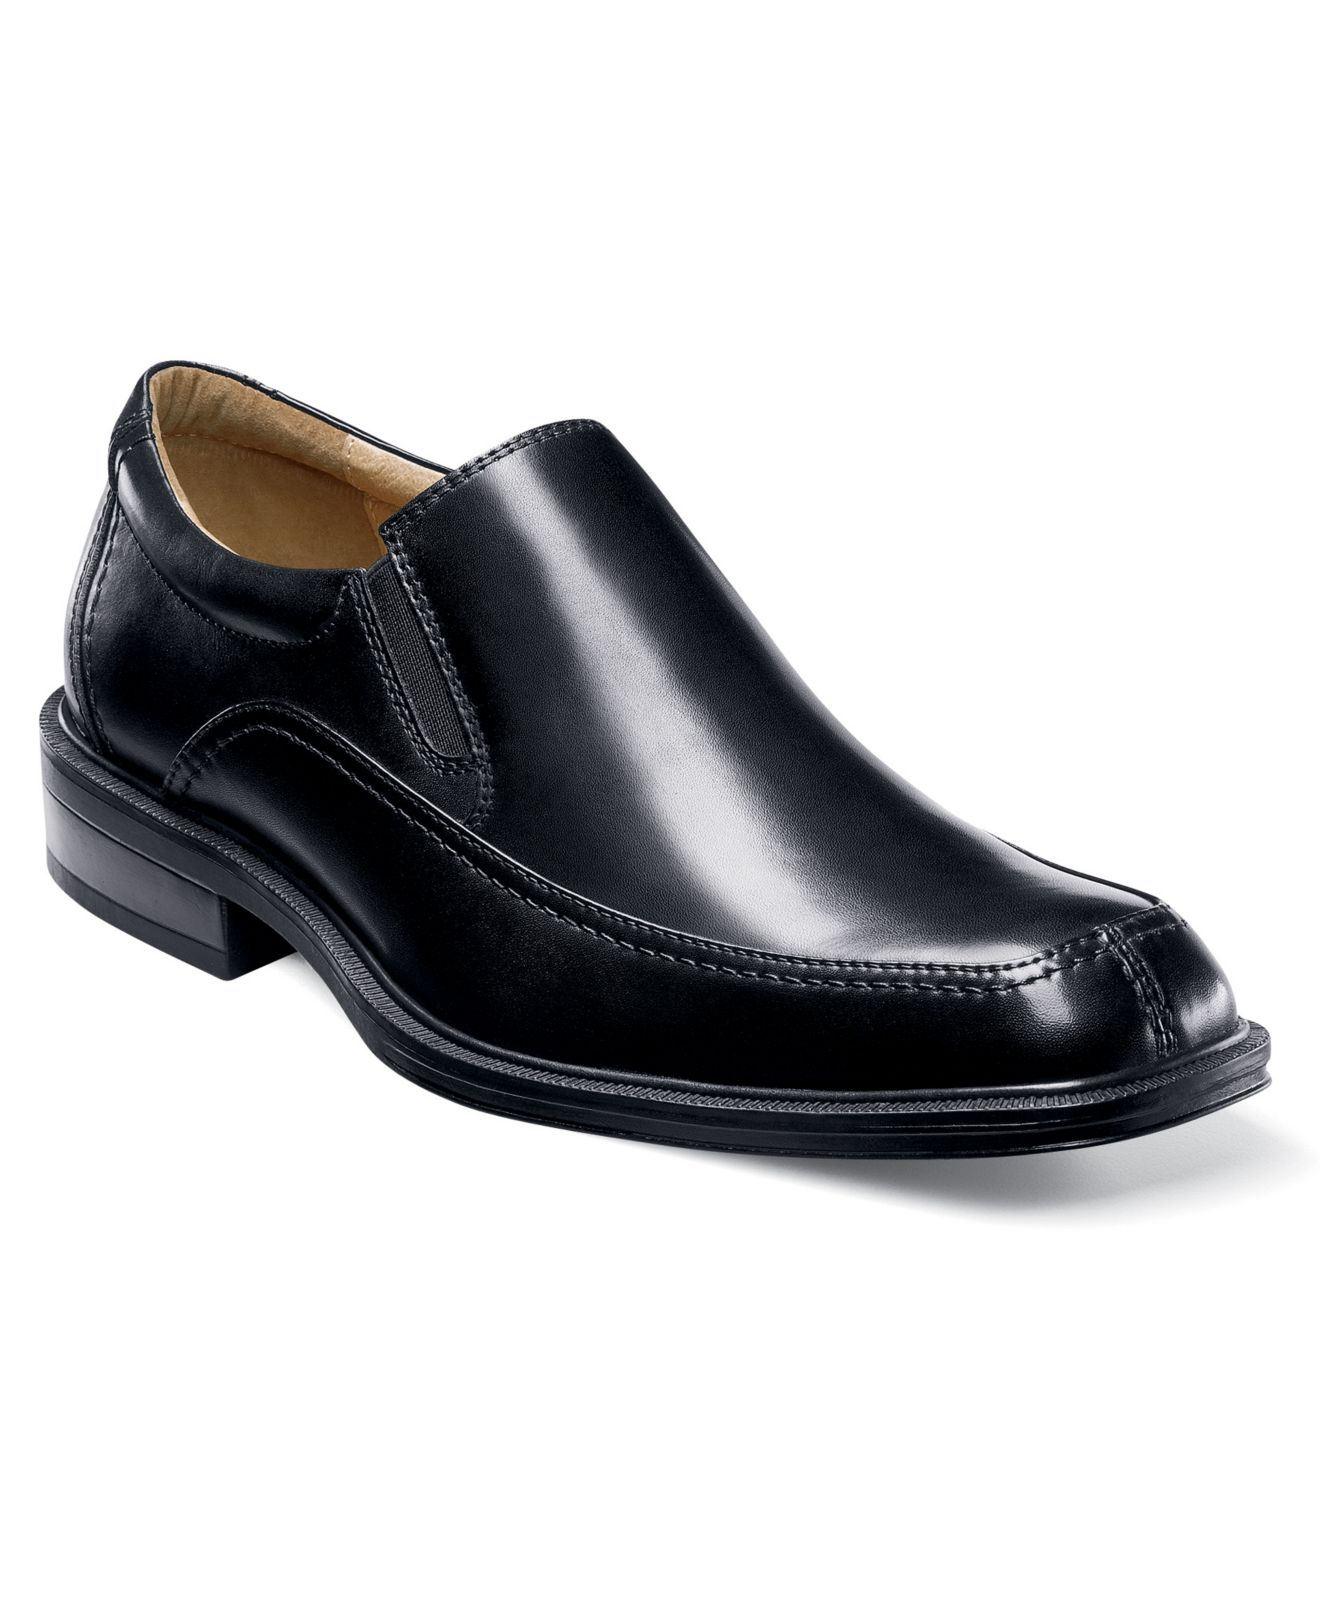 Lyst - Florsheim Bogan Moc Toe Slip-On Shoes in Black for Men